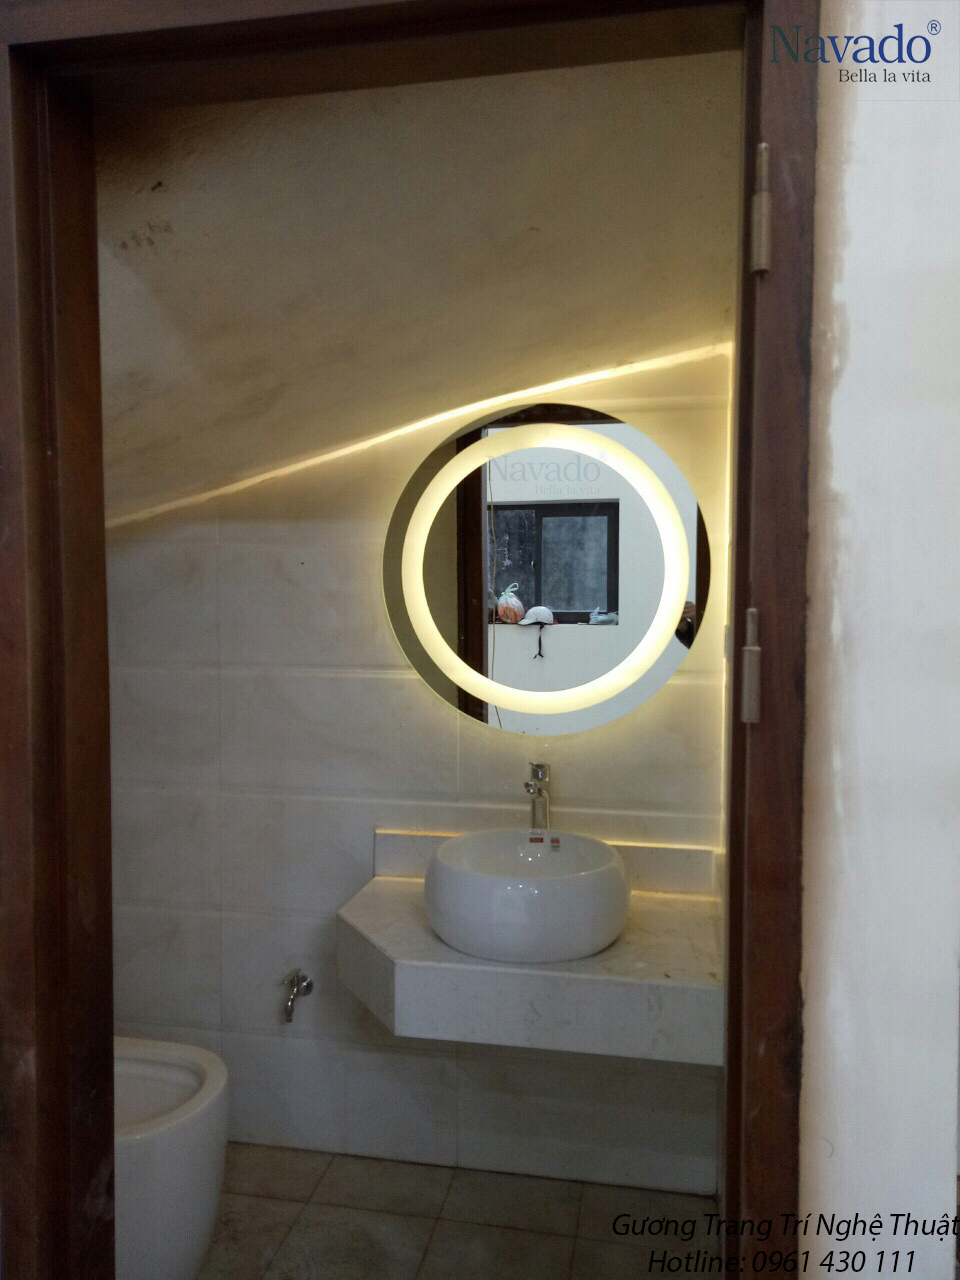 với Gương nhà tắm Navado đèn led cao cấp, phòng tắm của bạn sẽ trở nên đẹp lung linh hơn bao giờ hết. Thiết kế hiện đại và tiên tiến, kết hợp với đèn LED tiết kiệm và bền bỉ đã tạo nên một món đồ nội thất không thể thiếu cho những ai yêu thích sự tiện nghi và đẳng cấp. Khám phá hình ảnh sản phẩm để cảm nhận sự khác biệt nhé!